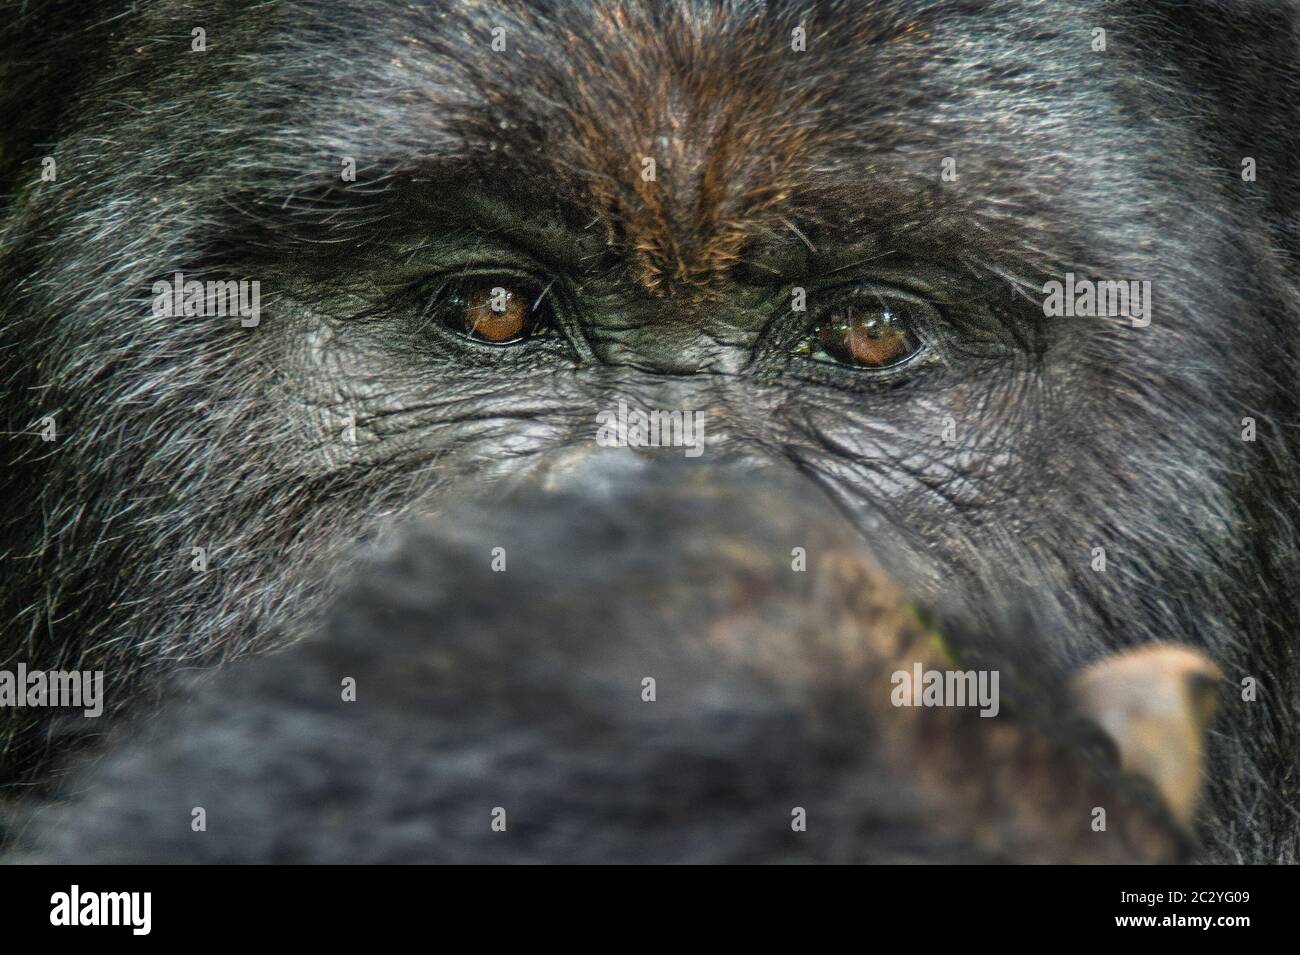 Close up portrait of mountain gorilla (Gorilla beringei beringei), Rwanda, Africa Stock Photo